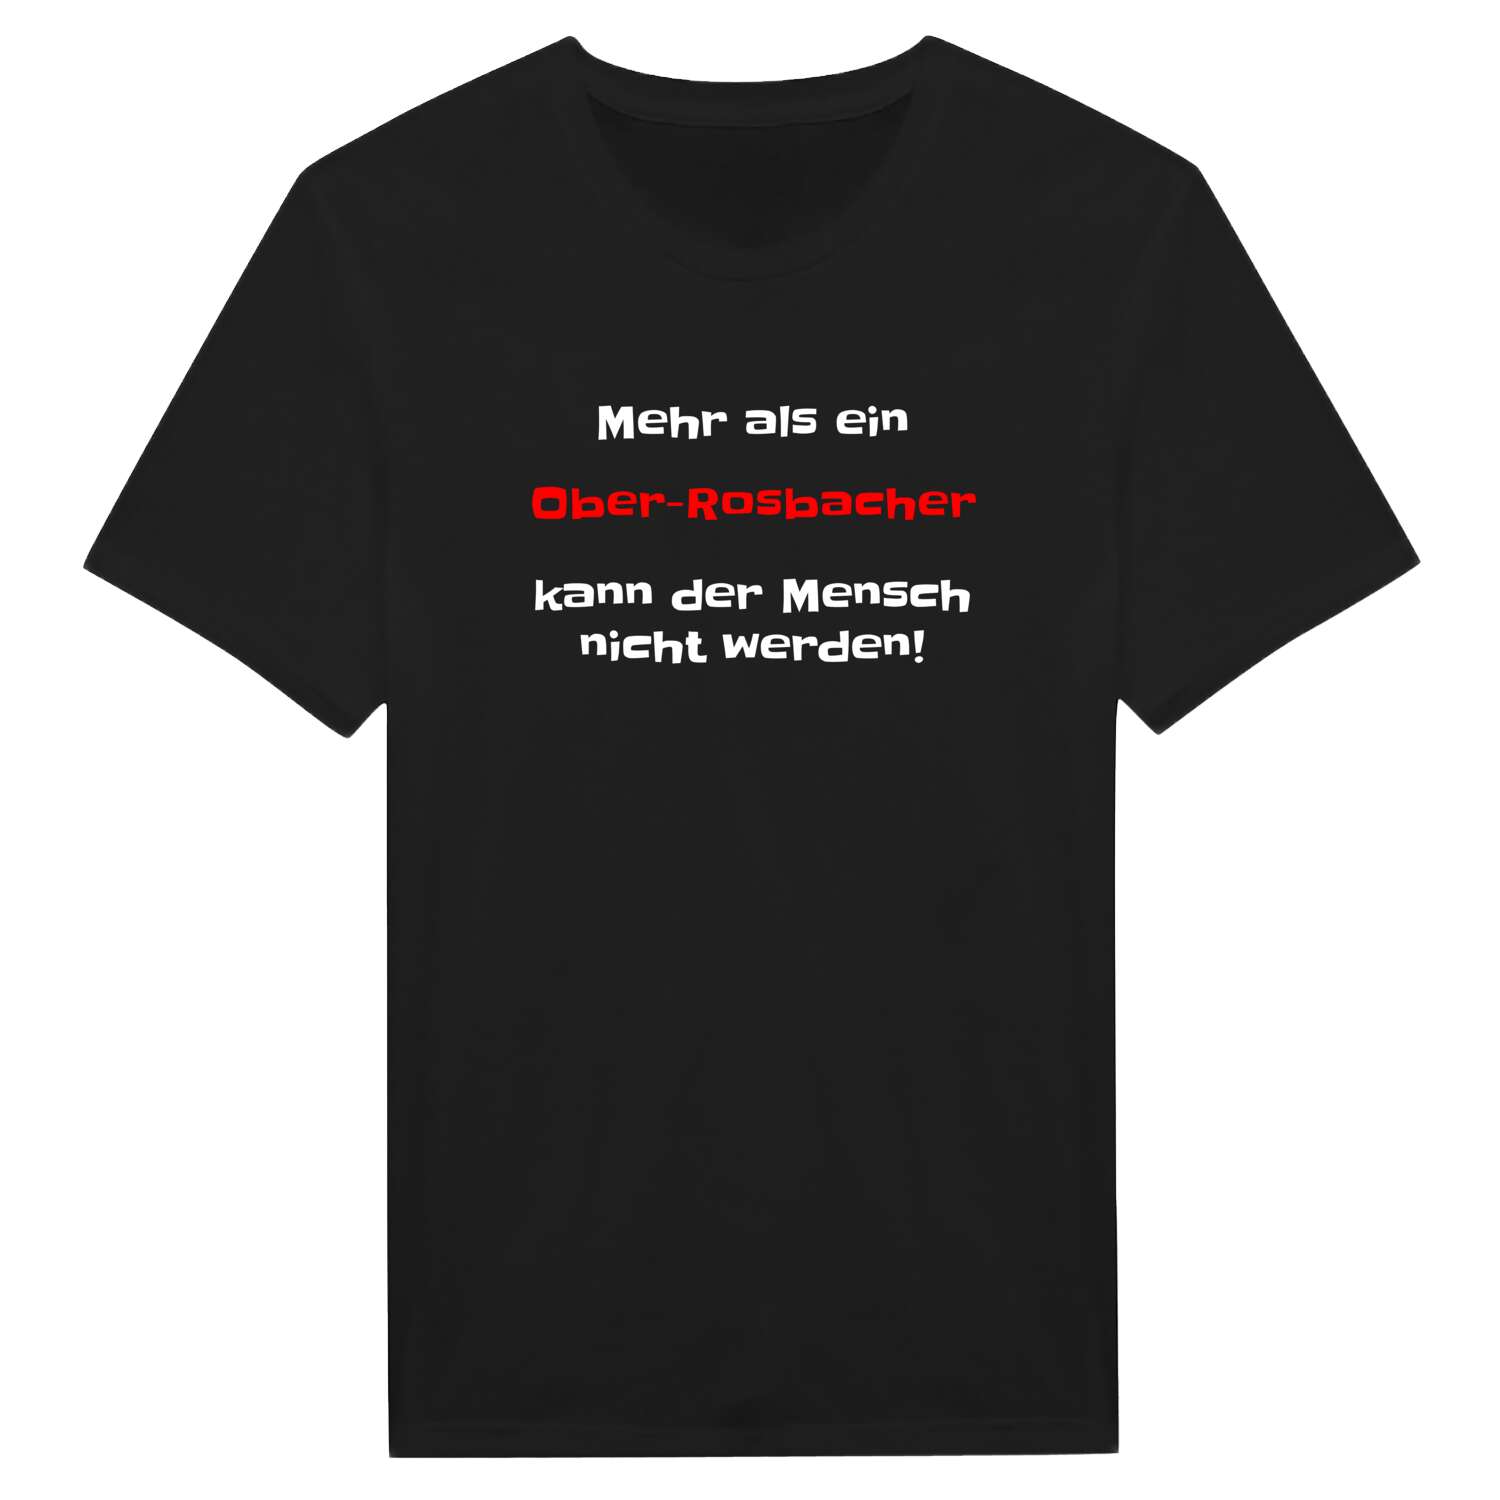 Ober-Rosbach T-Shirt »Mehr als ein«